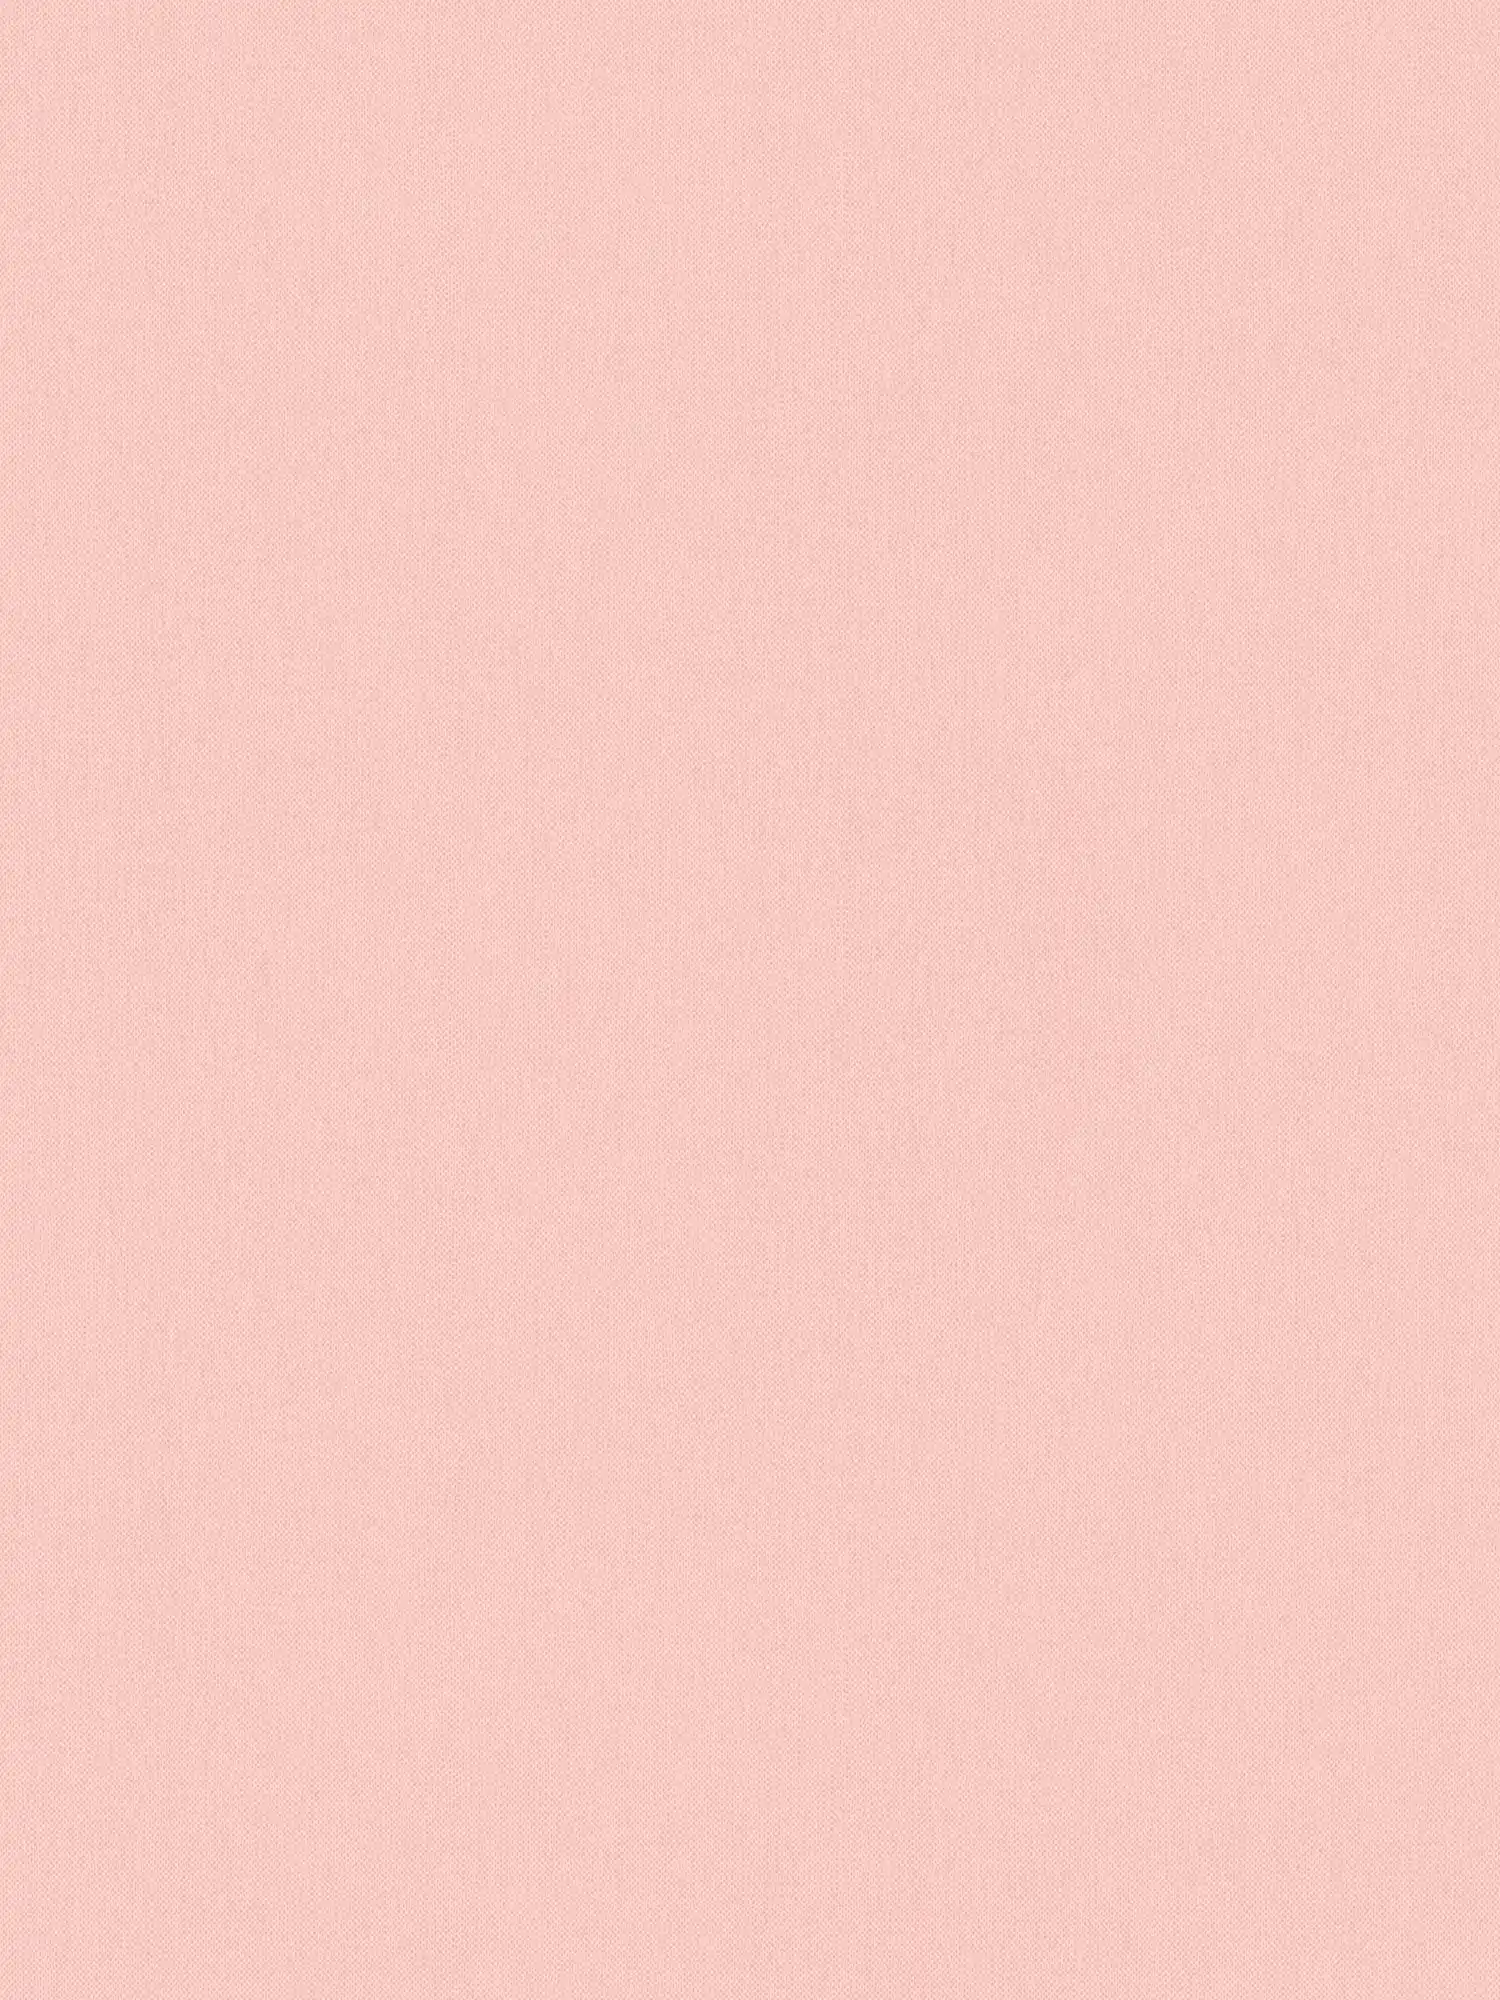 Papier peint rose pastel avec structure en lin & aspect textile - rose
